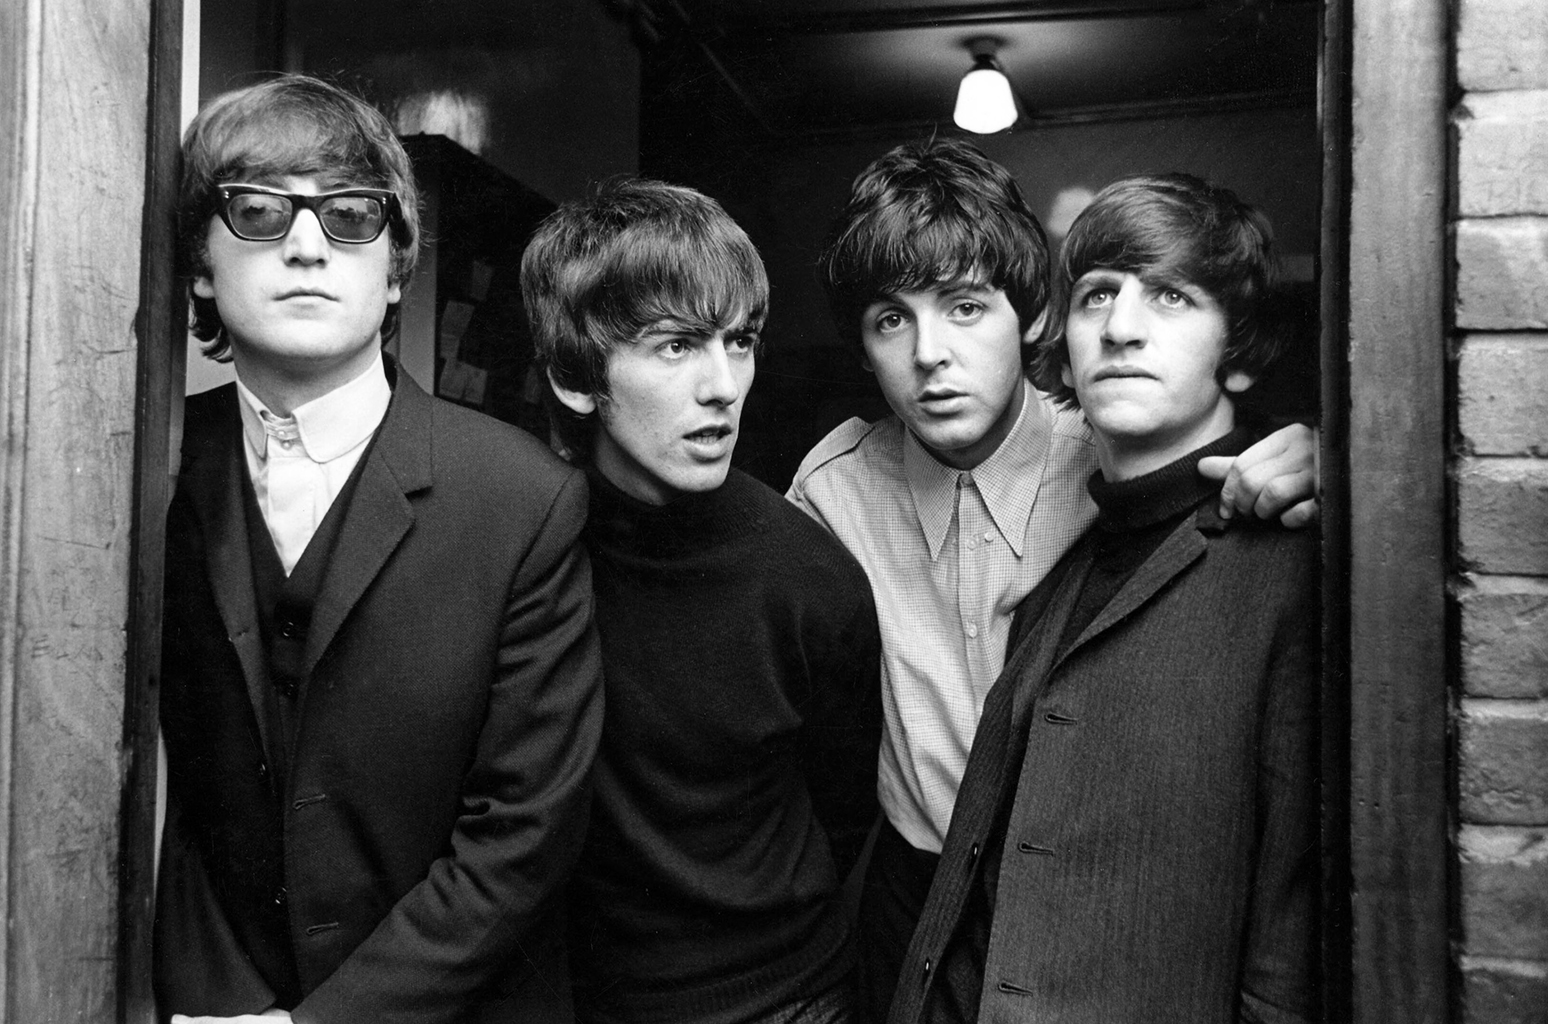 Группа «The Beatles»